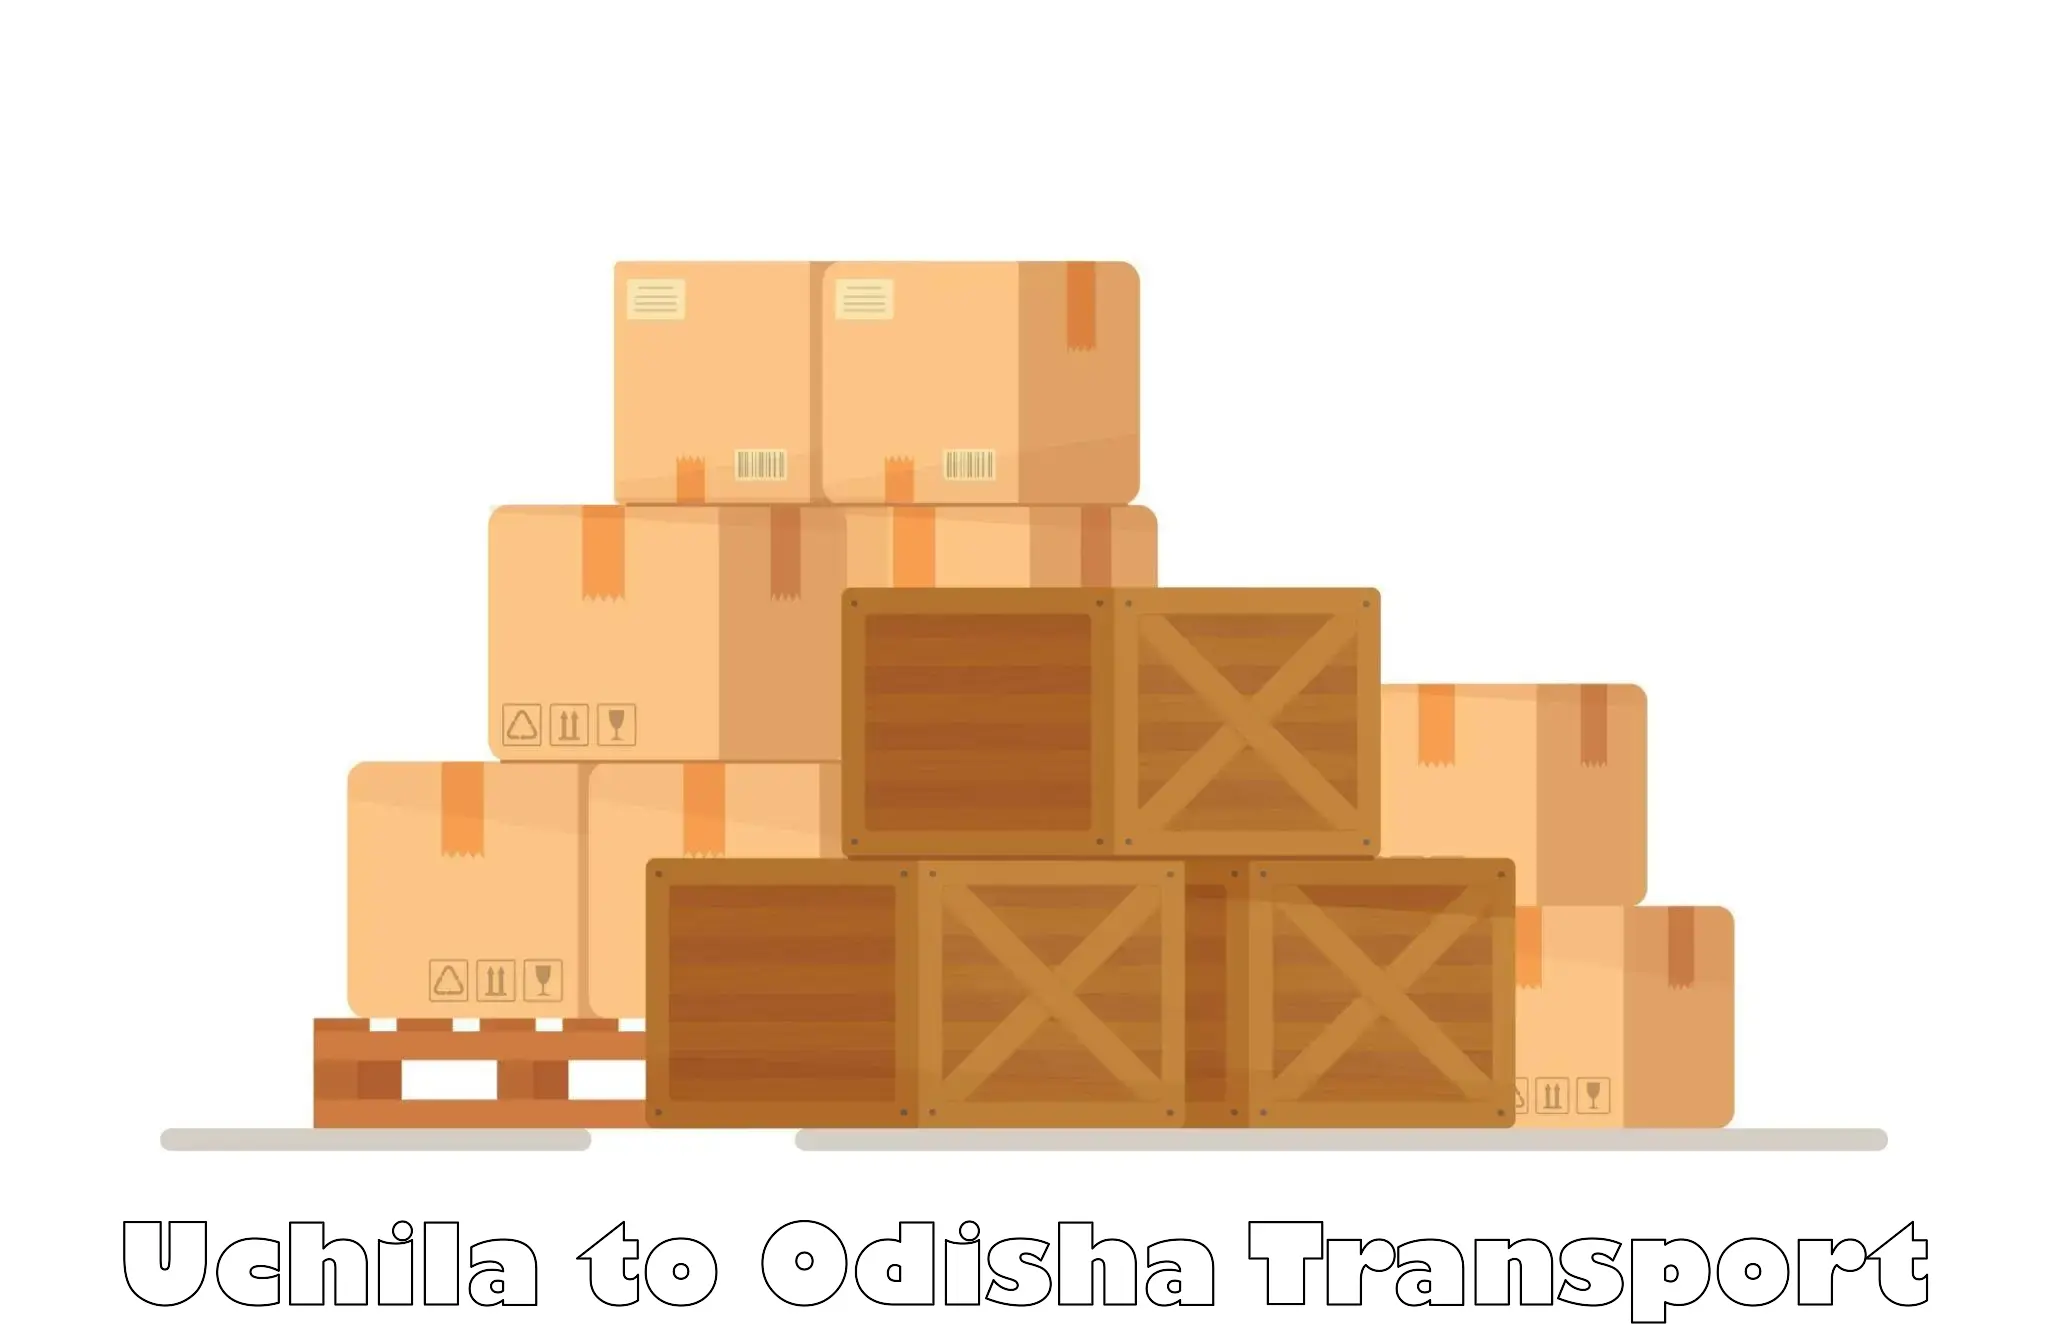 Container transport service Uchila to Badagada